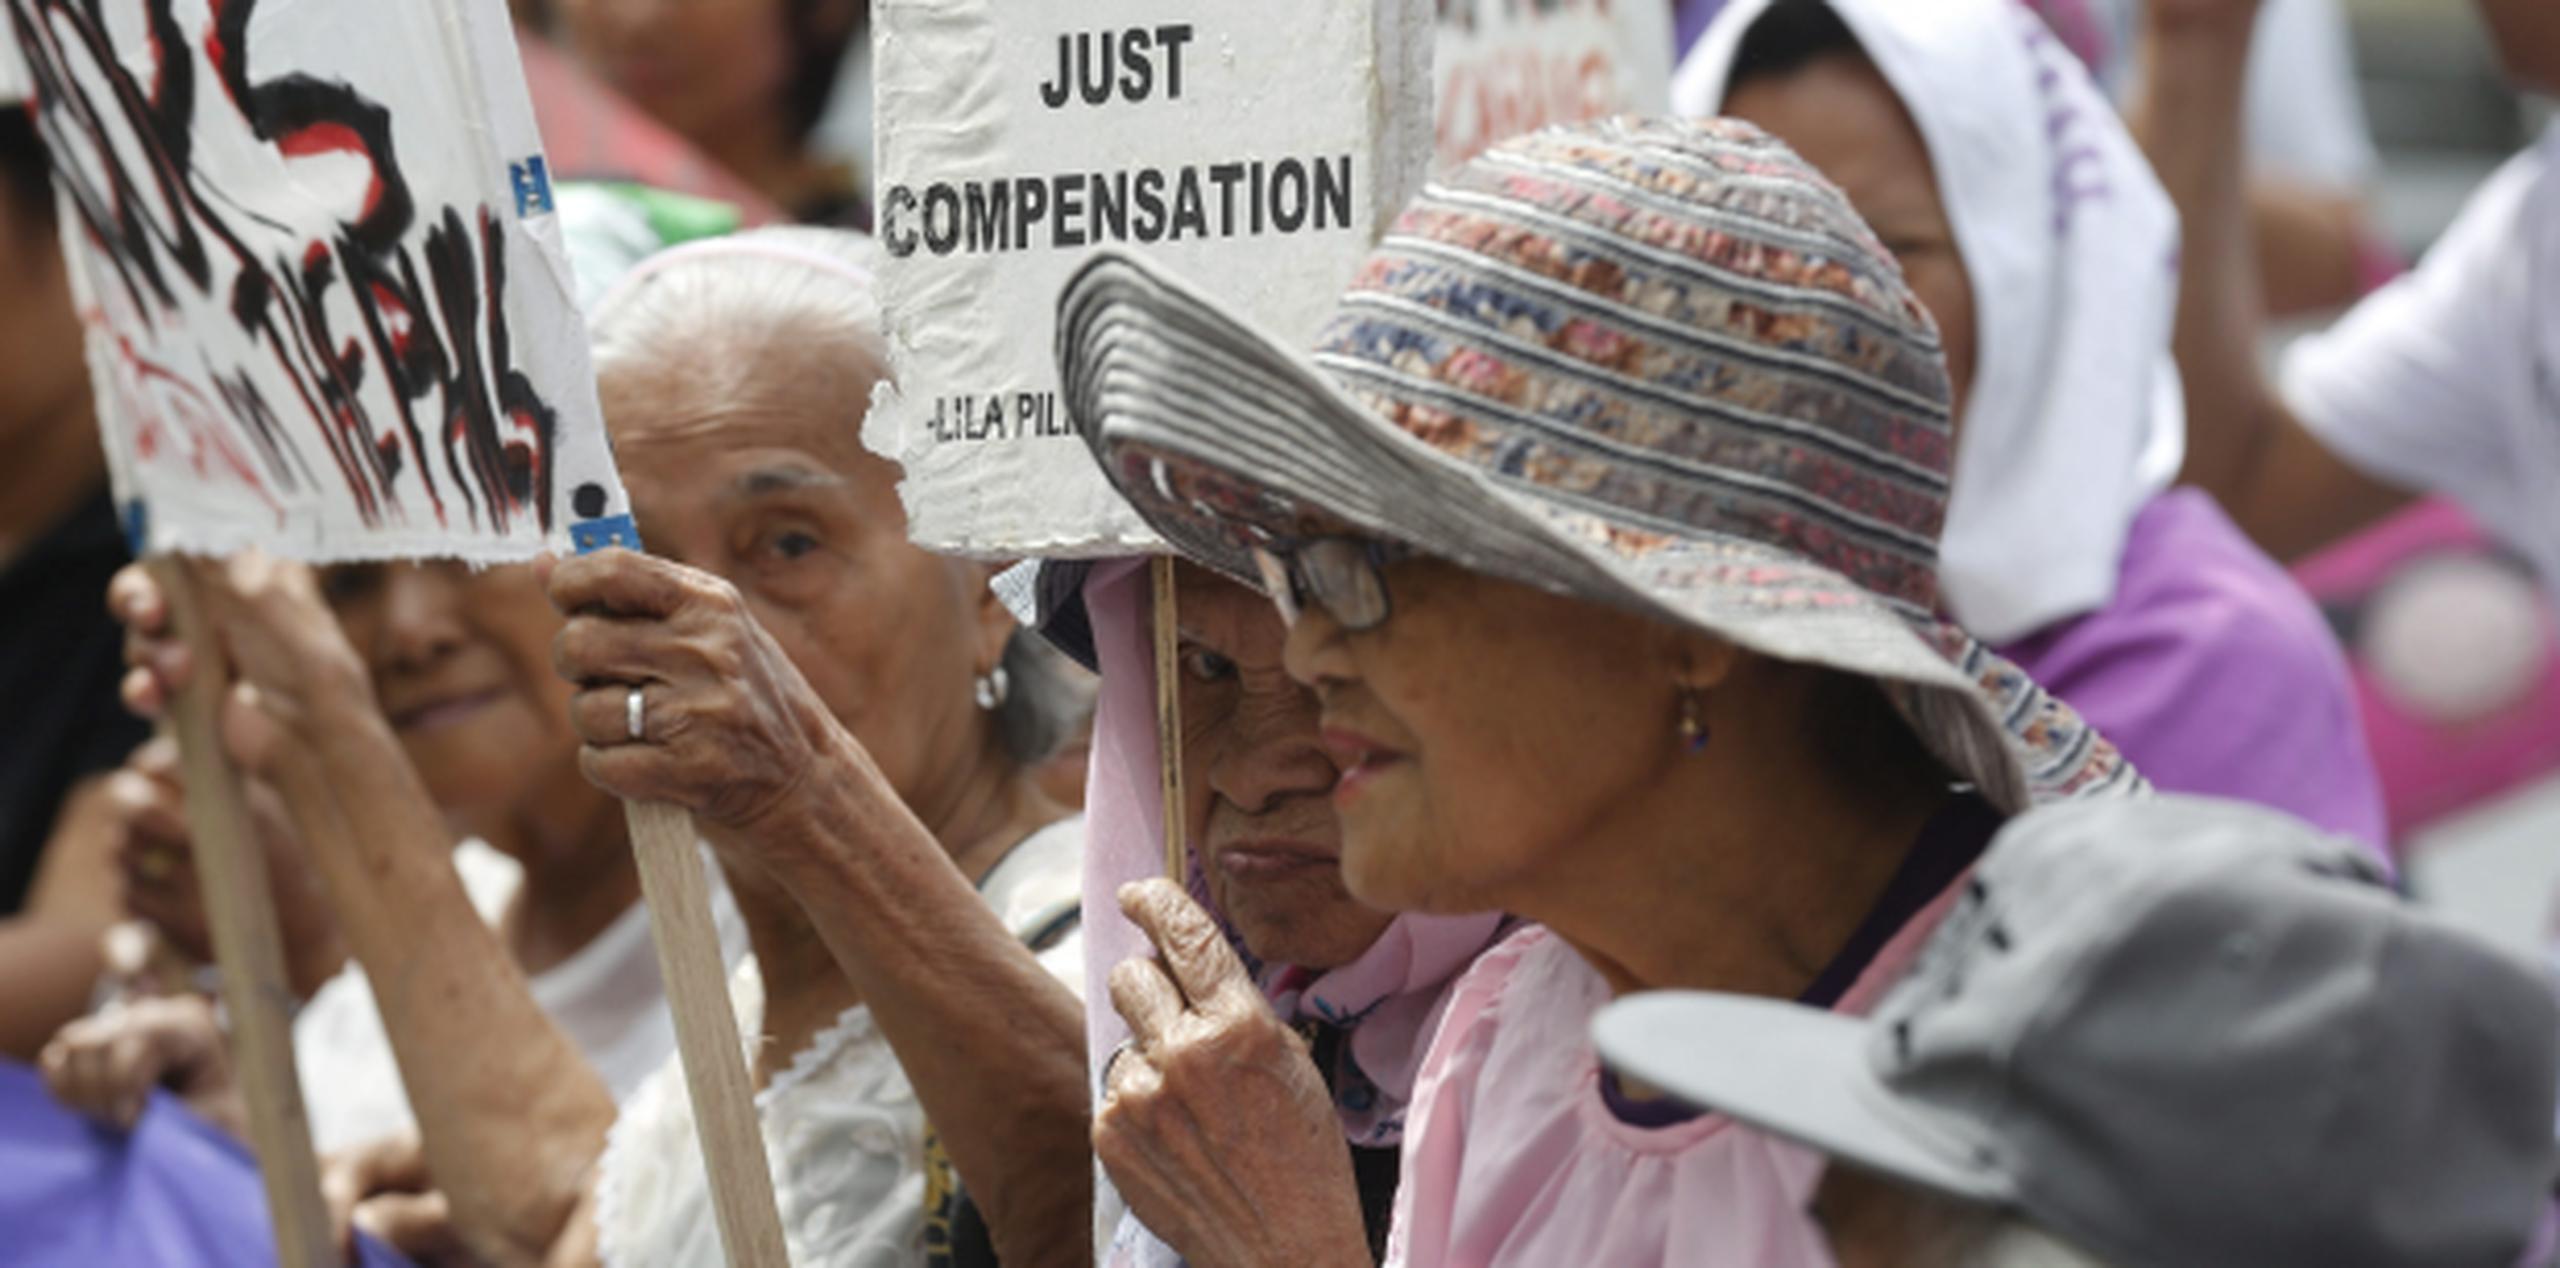 La protesta es por un acuerdo de defensa entre Tokio y Manila pactyado en momentos de elevada tensión por las disputas territoriales en el Mar de China Meridiona. (EFE)